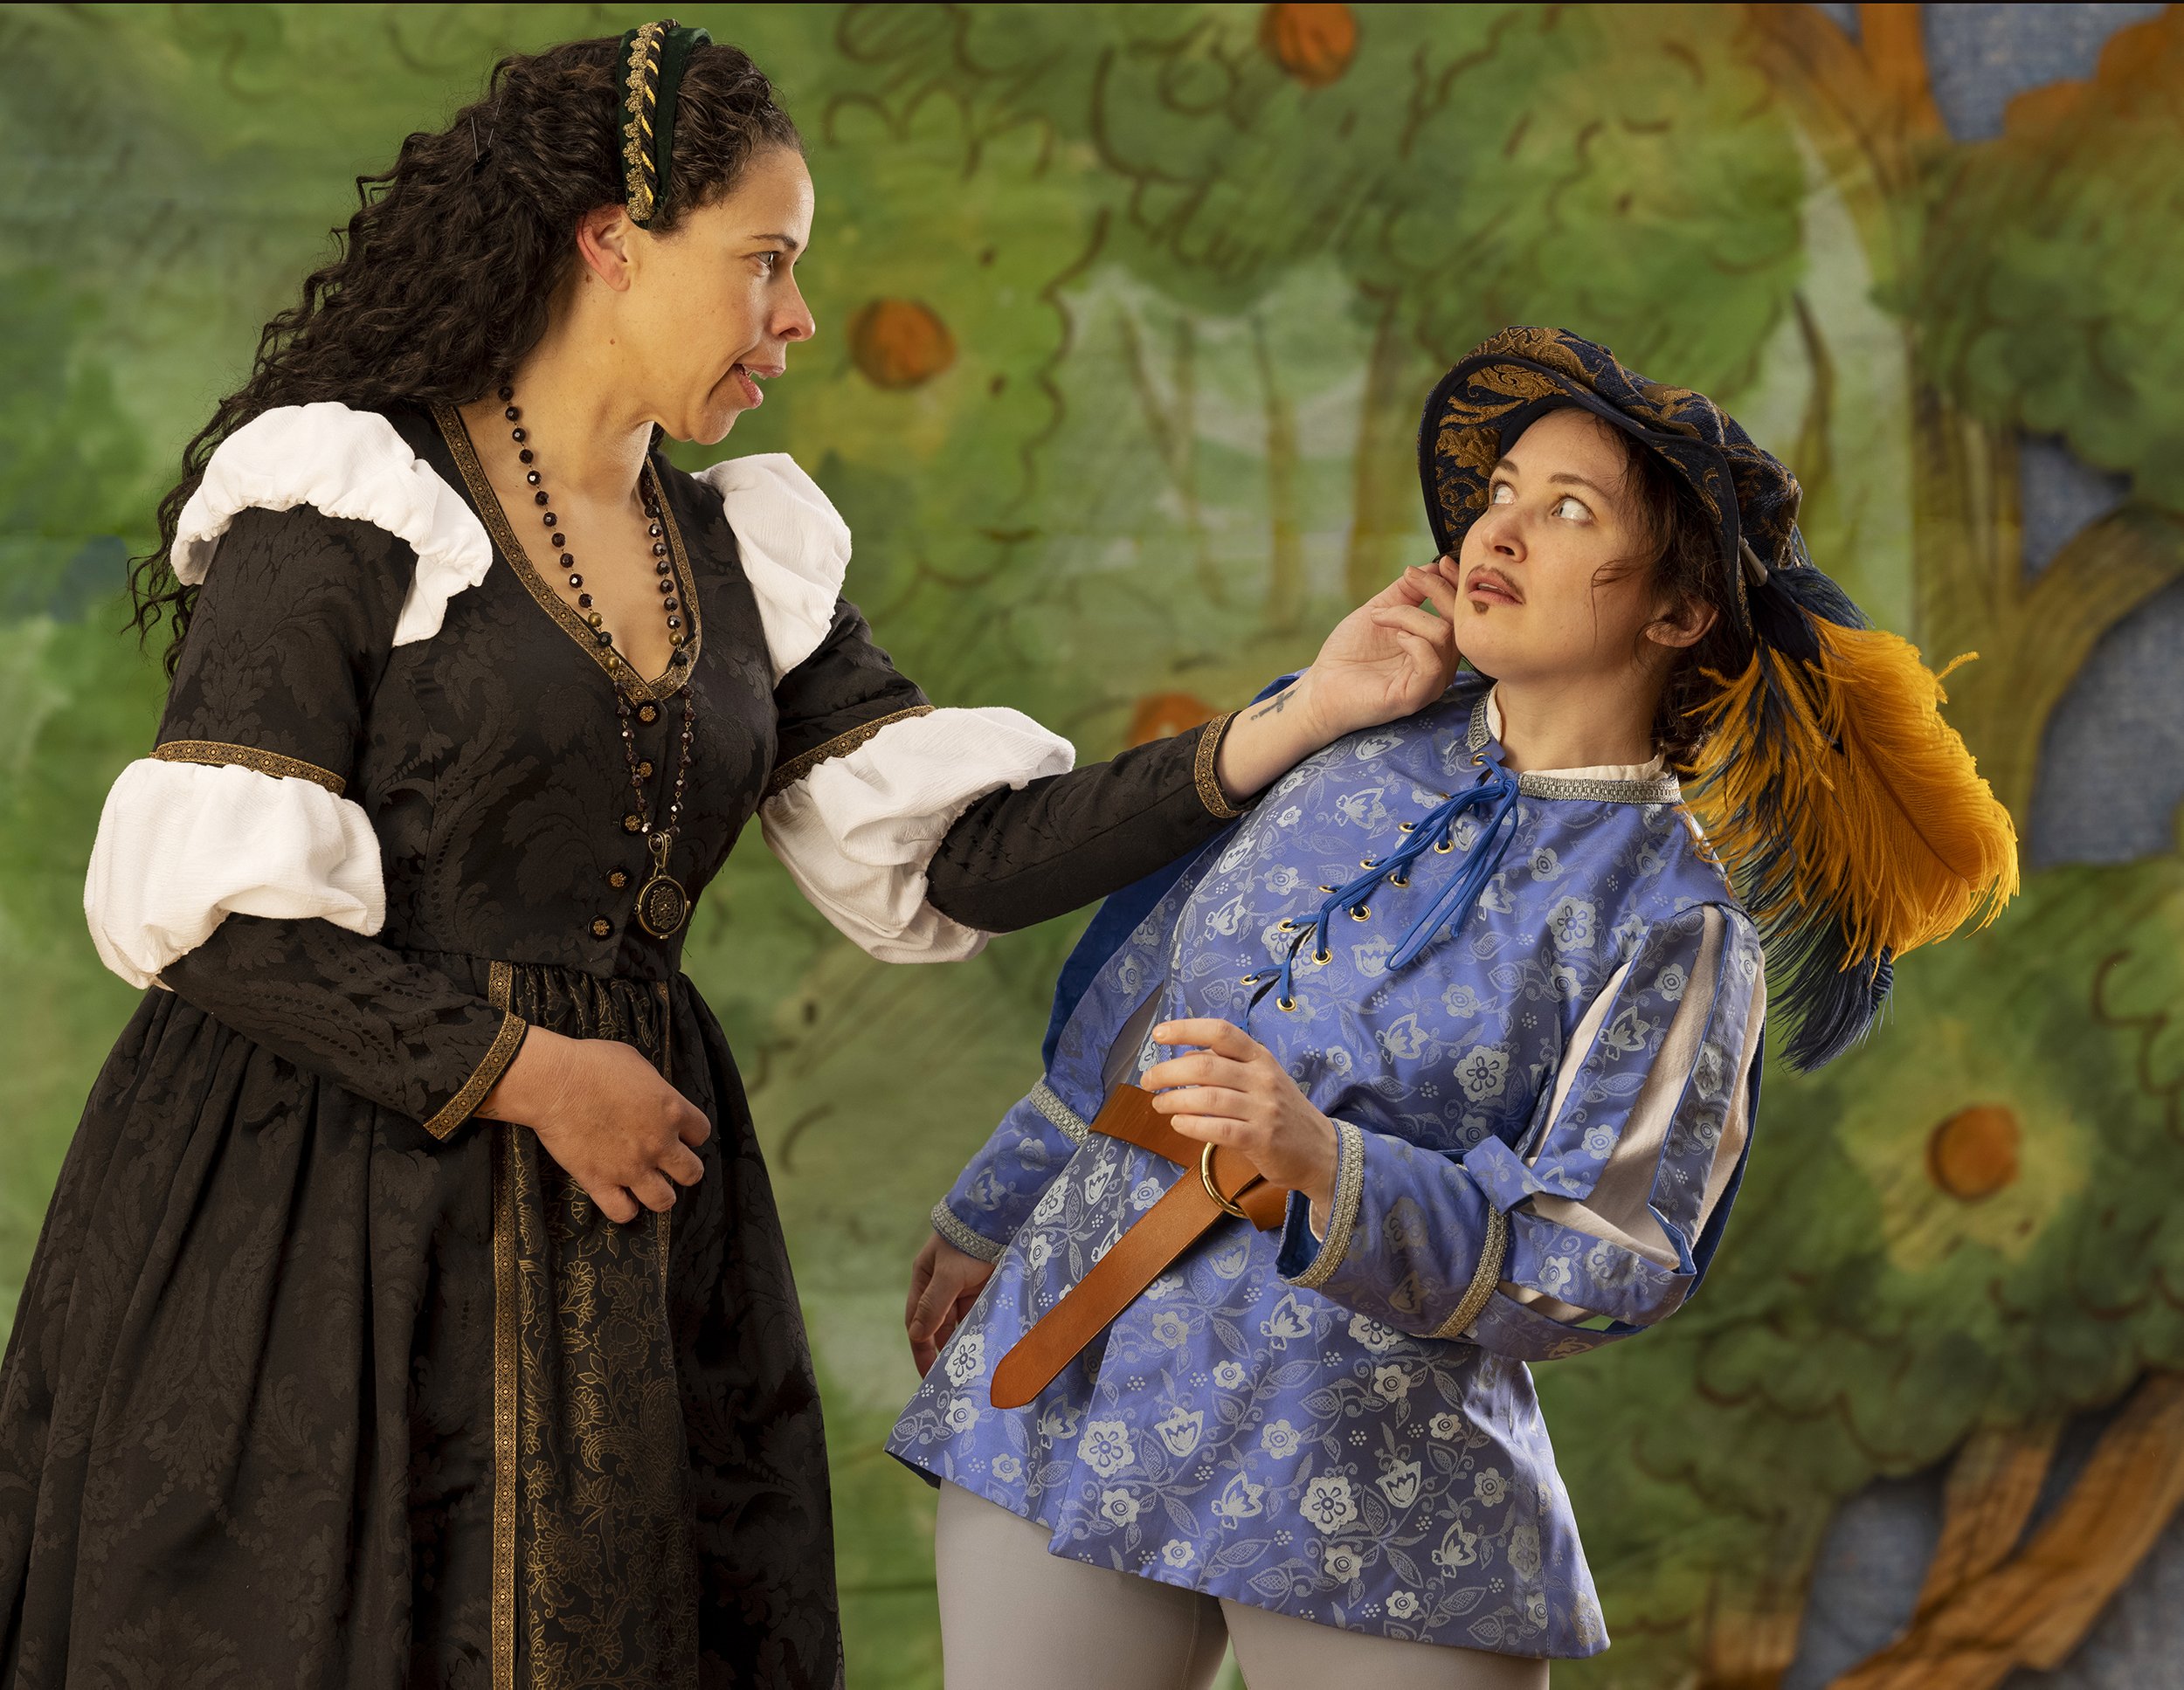 Carley Elizabeth Preston as Olivia and Bryn Booth as Viola in Twelfth Night. Photo by Tim Fuller.